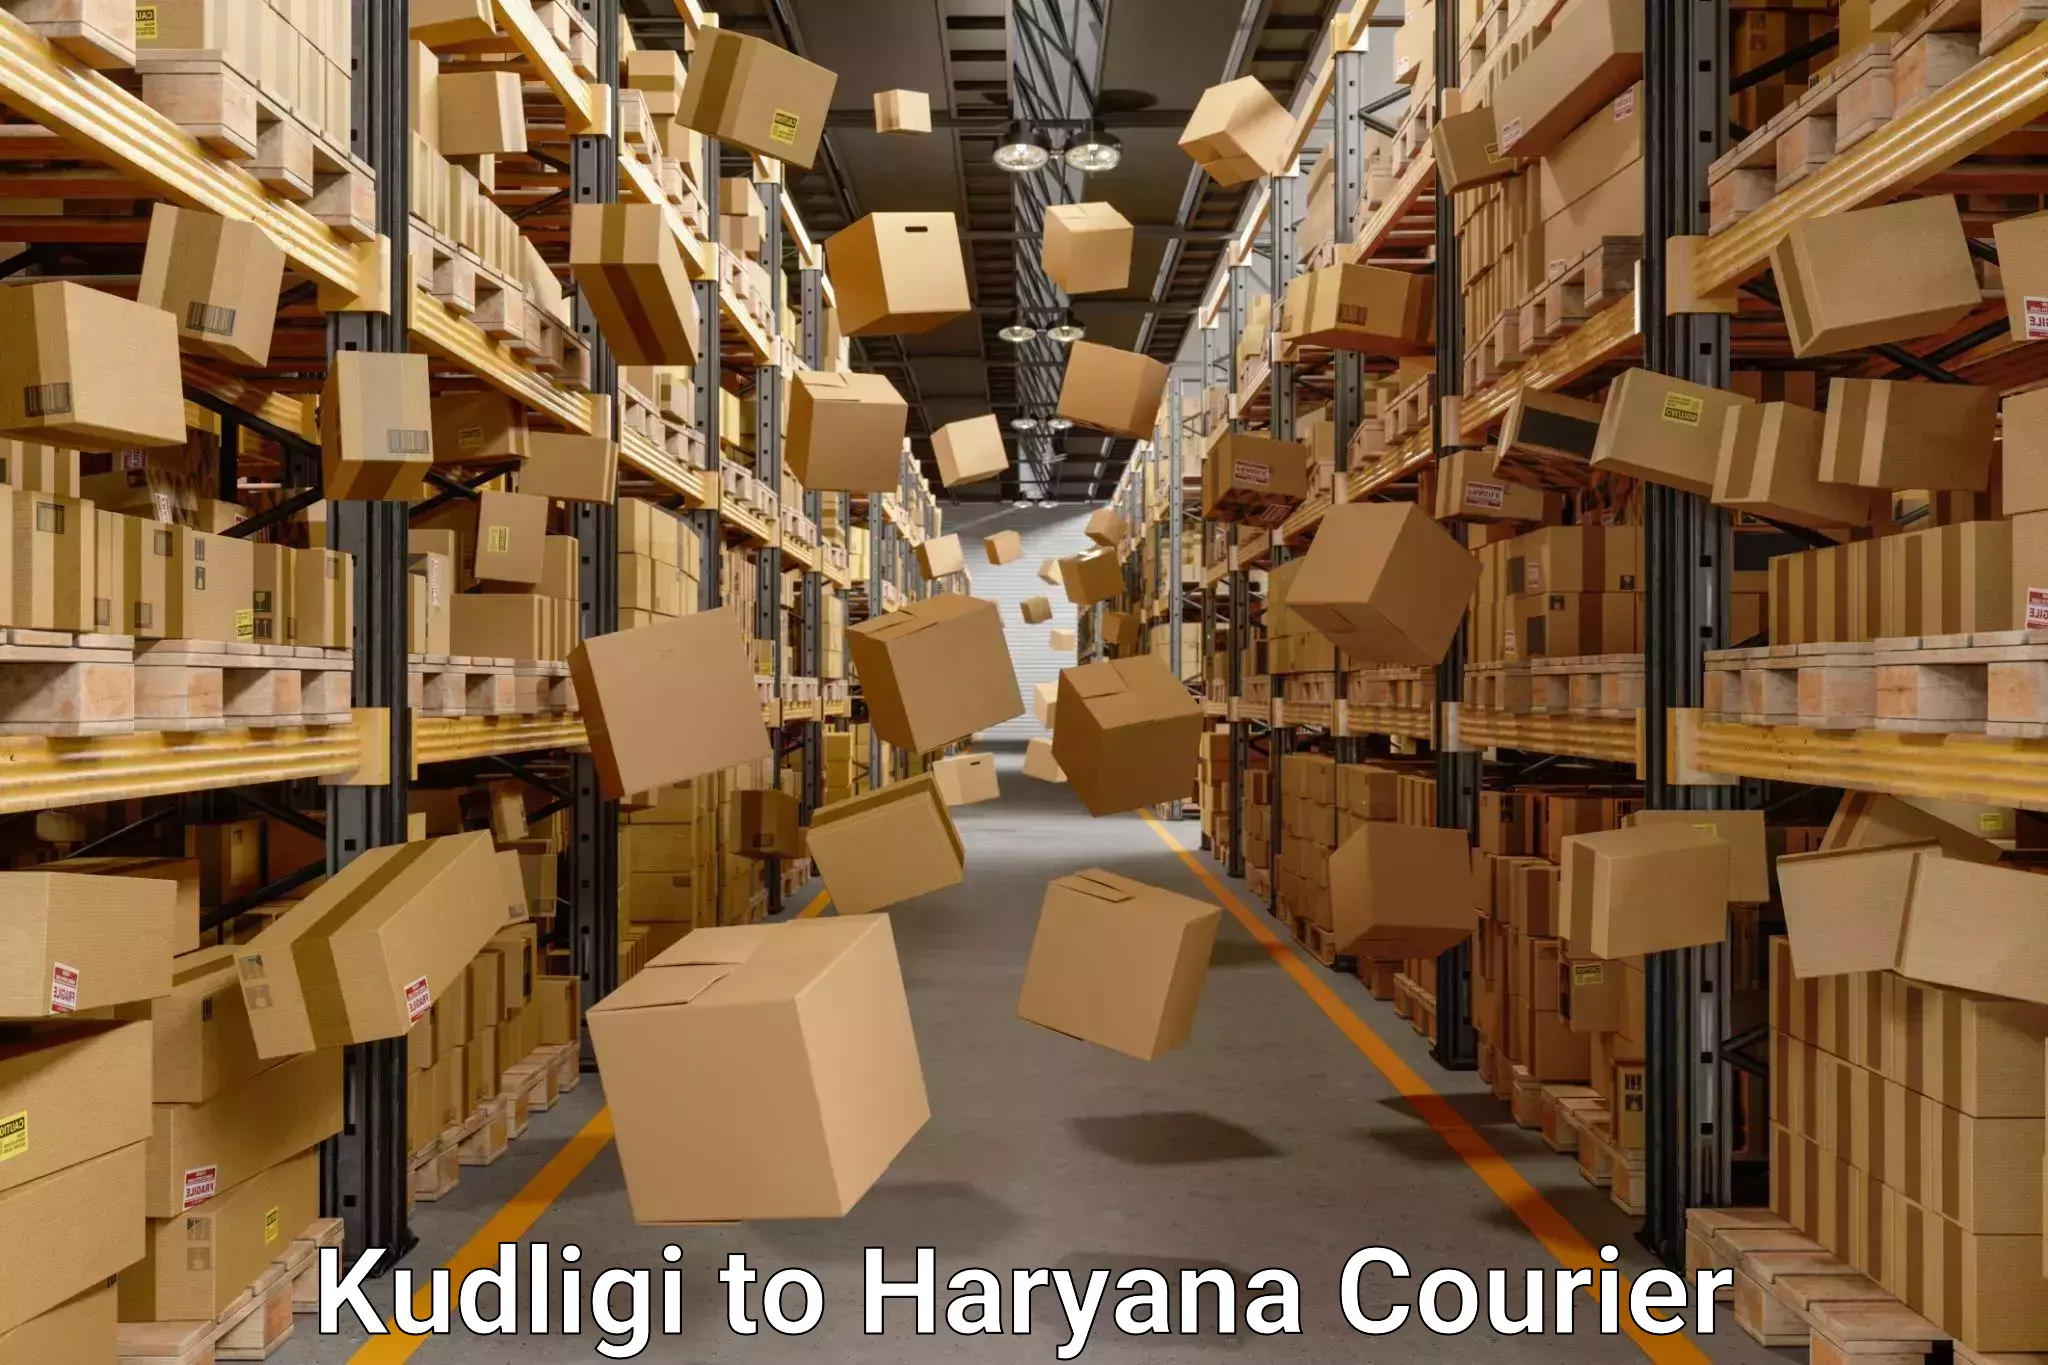 Professional movers Kudligi to Haryana